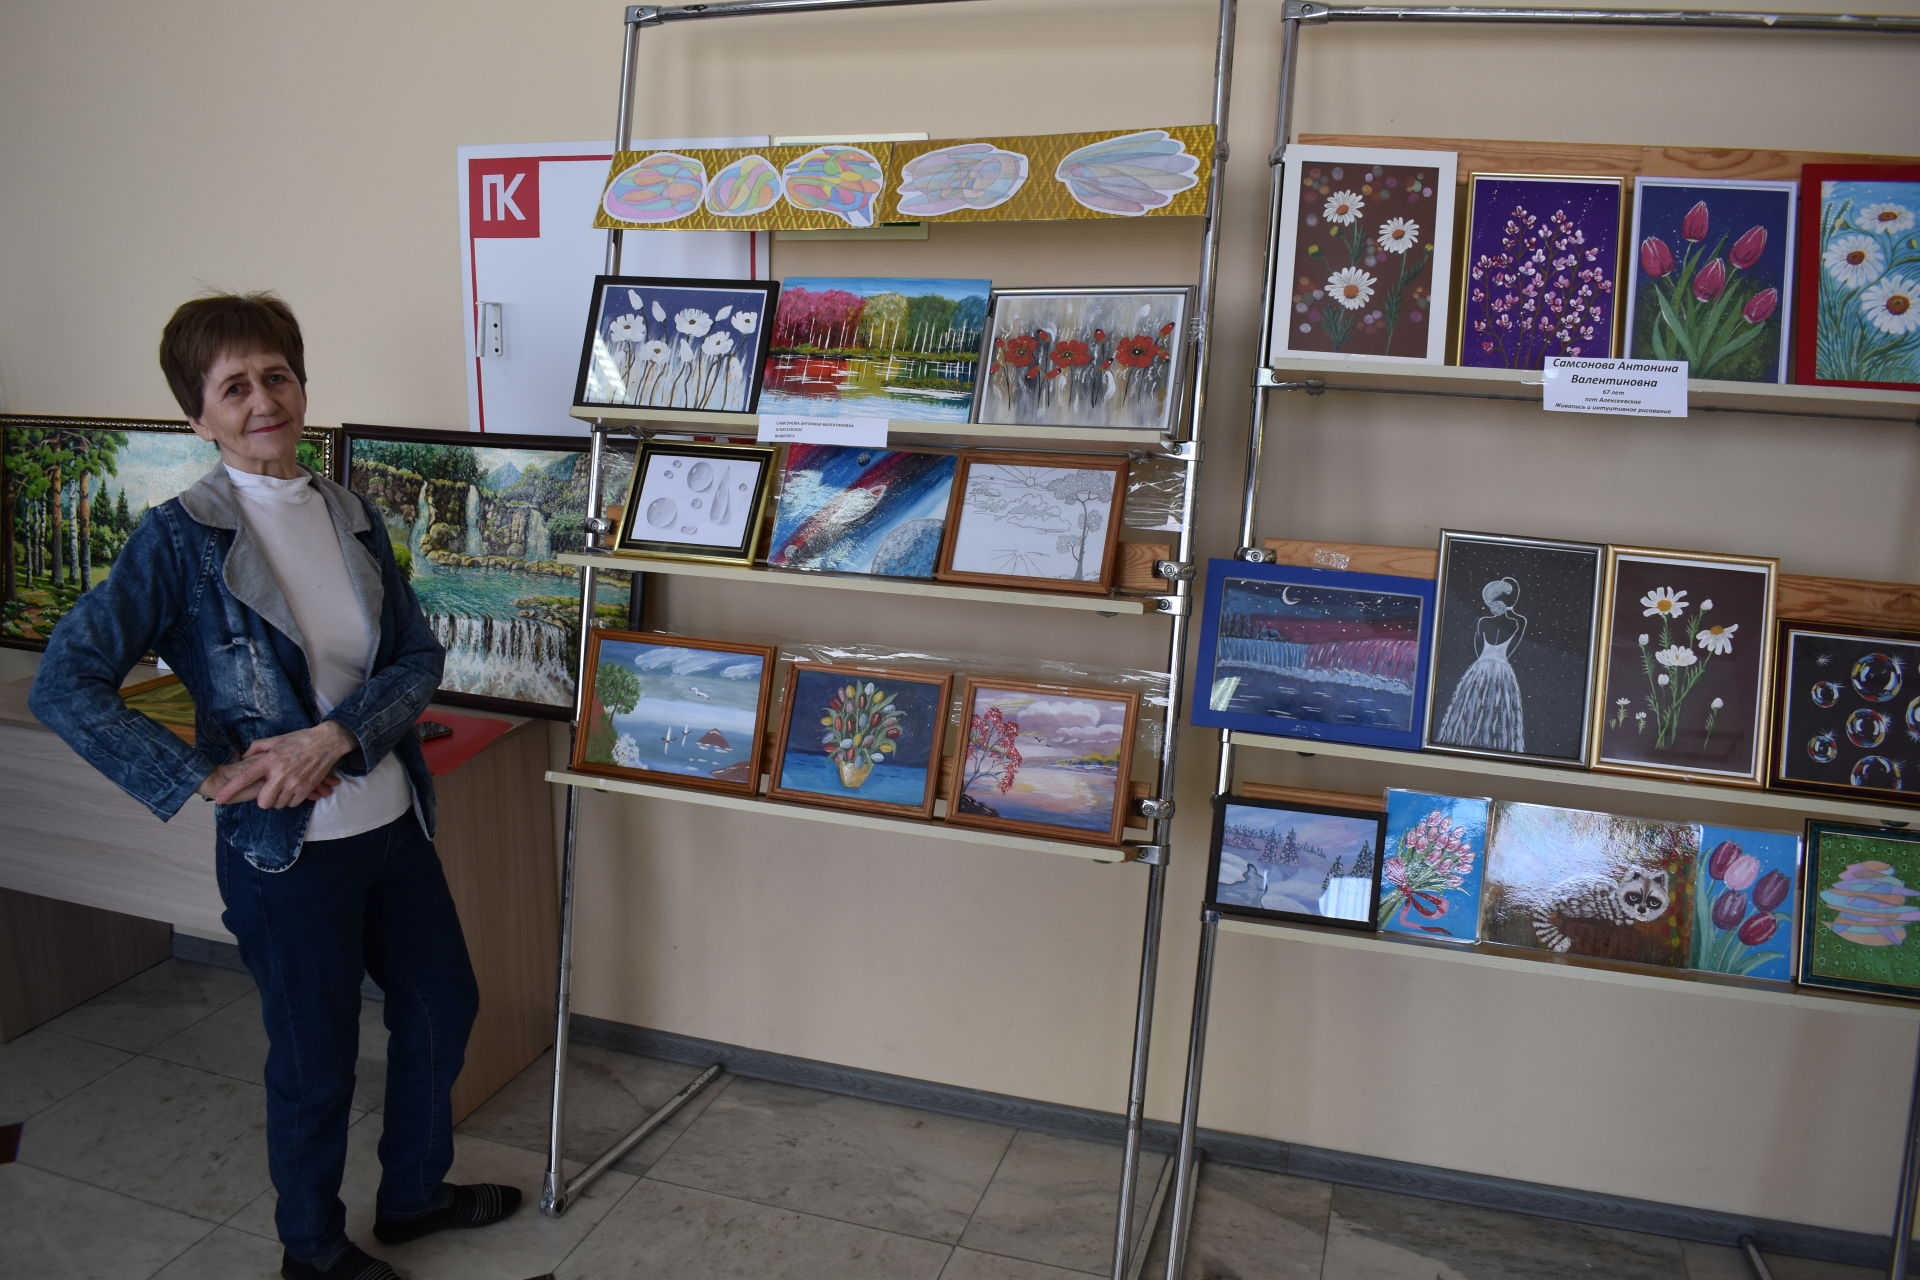 Победители районного конкурса среди пожилых получили подарки от Главы Алексеевского района